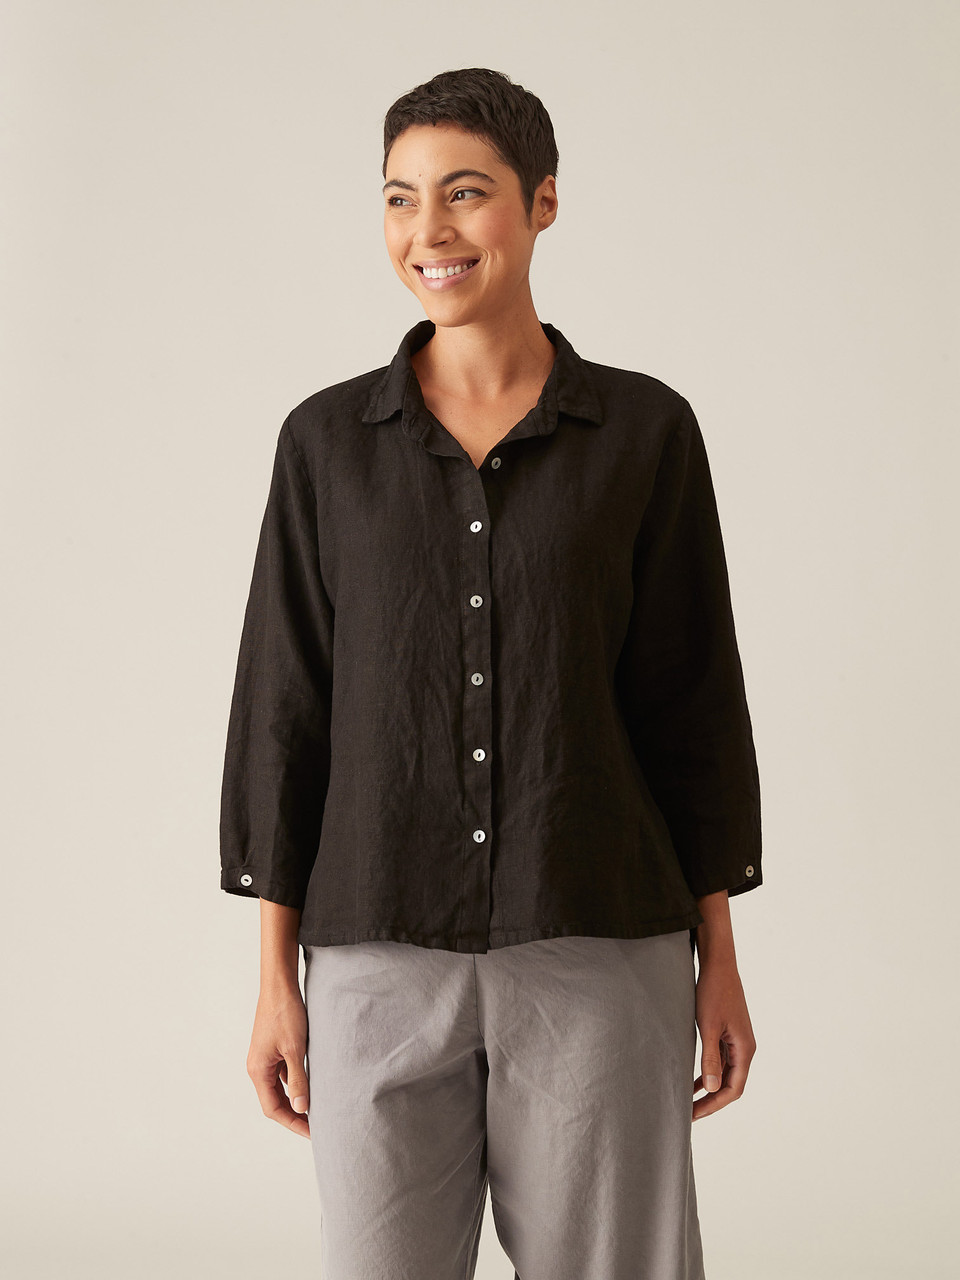 Cut Loose Solid Linen Hi-Low Crop Shirt - New Moon Boutique